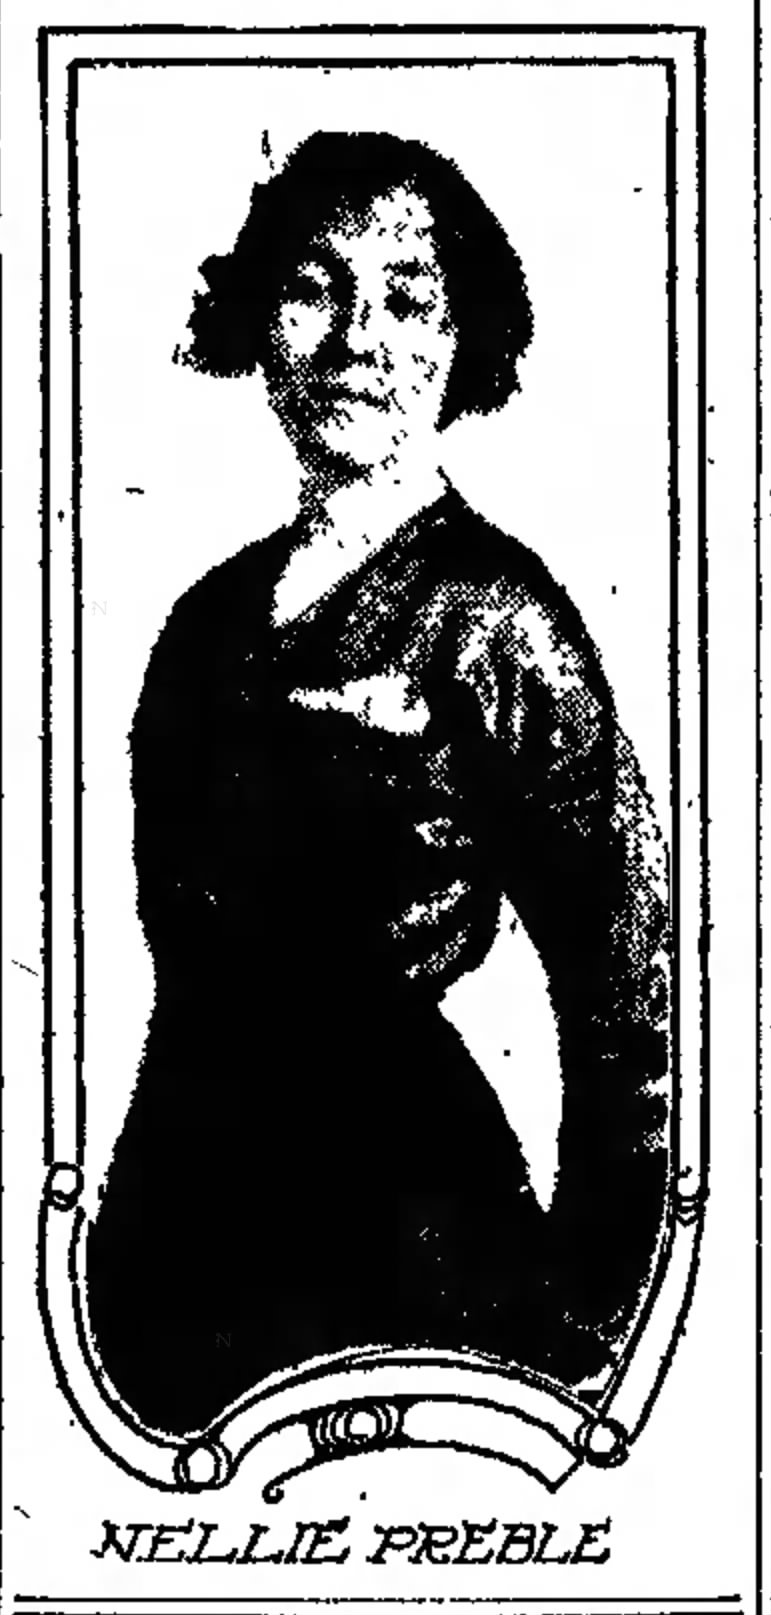 Preble, Nellie 1913